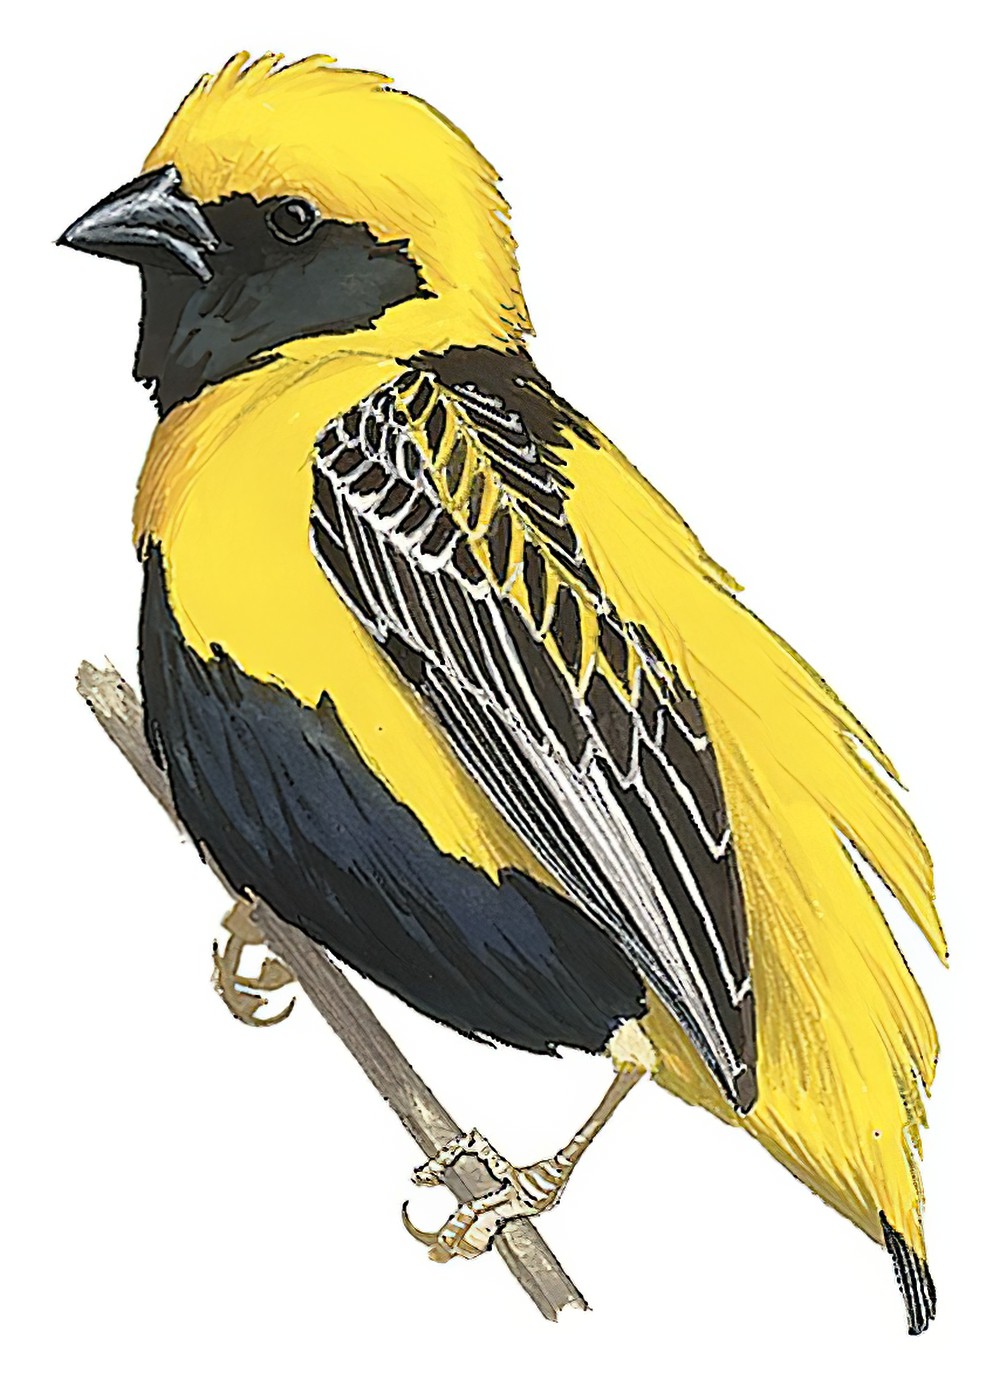 Yellow-crowned Bishop / Euplectes afer